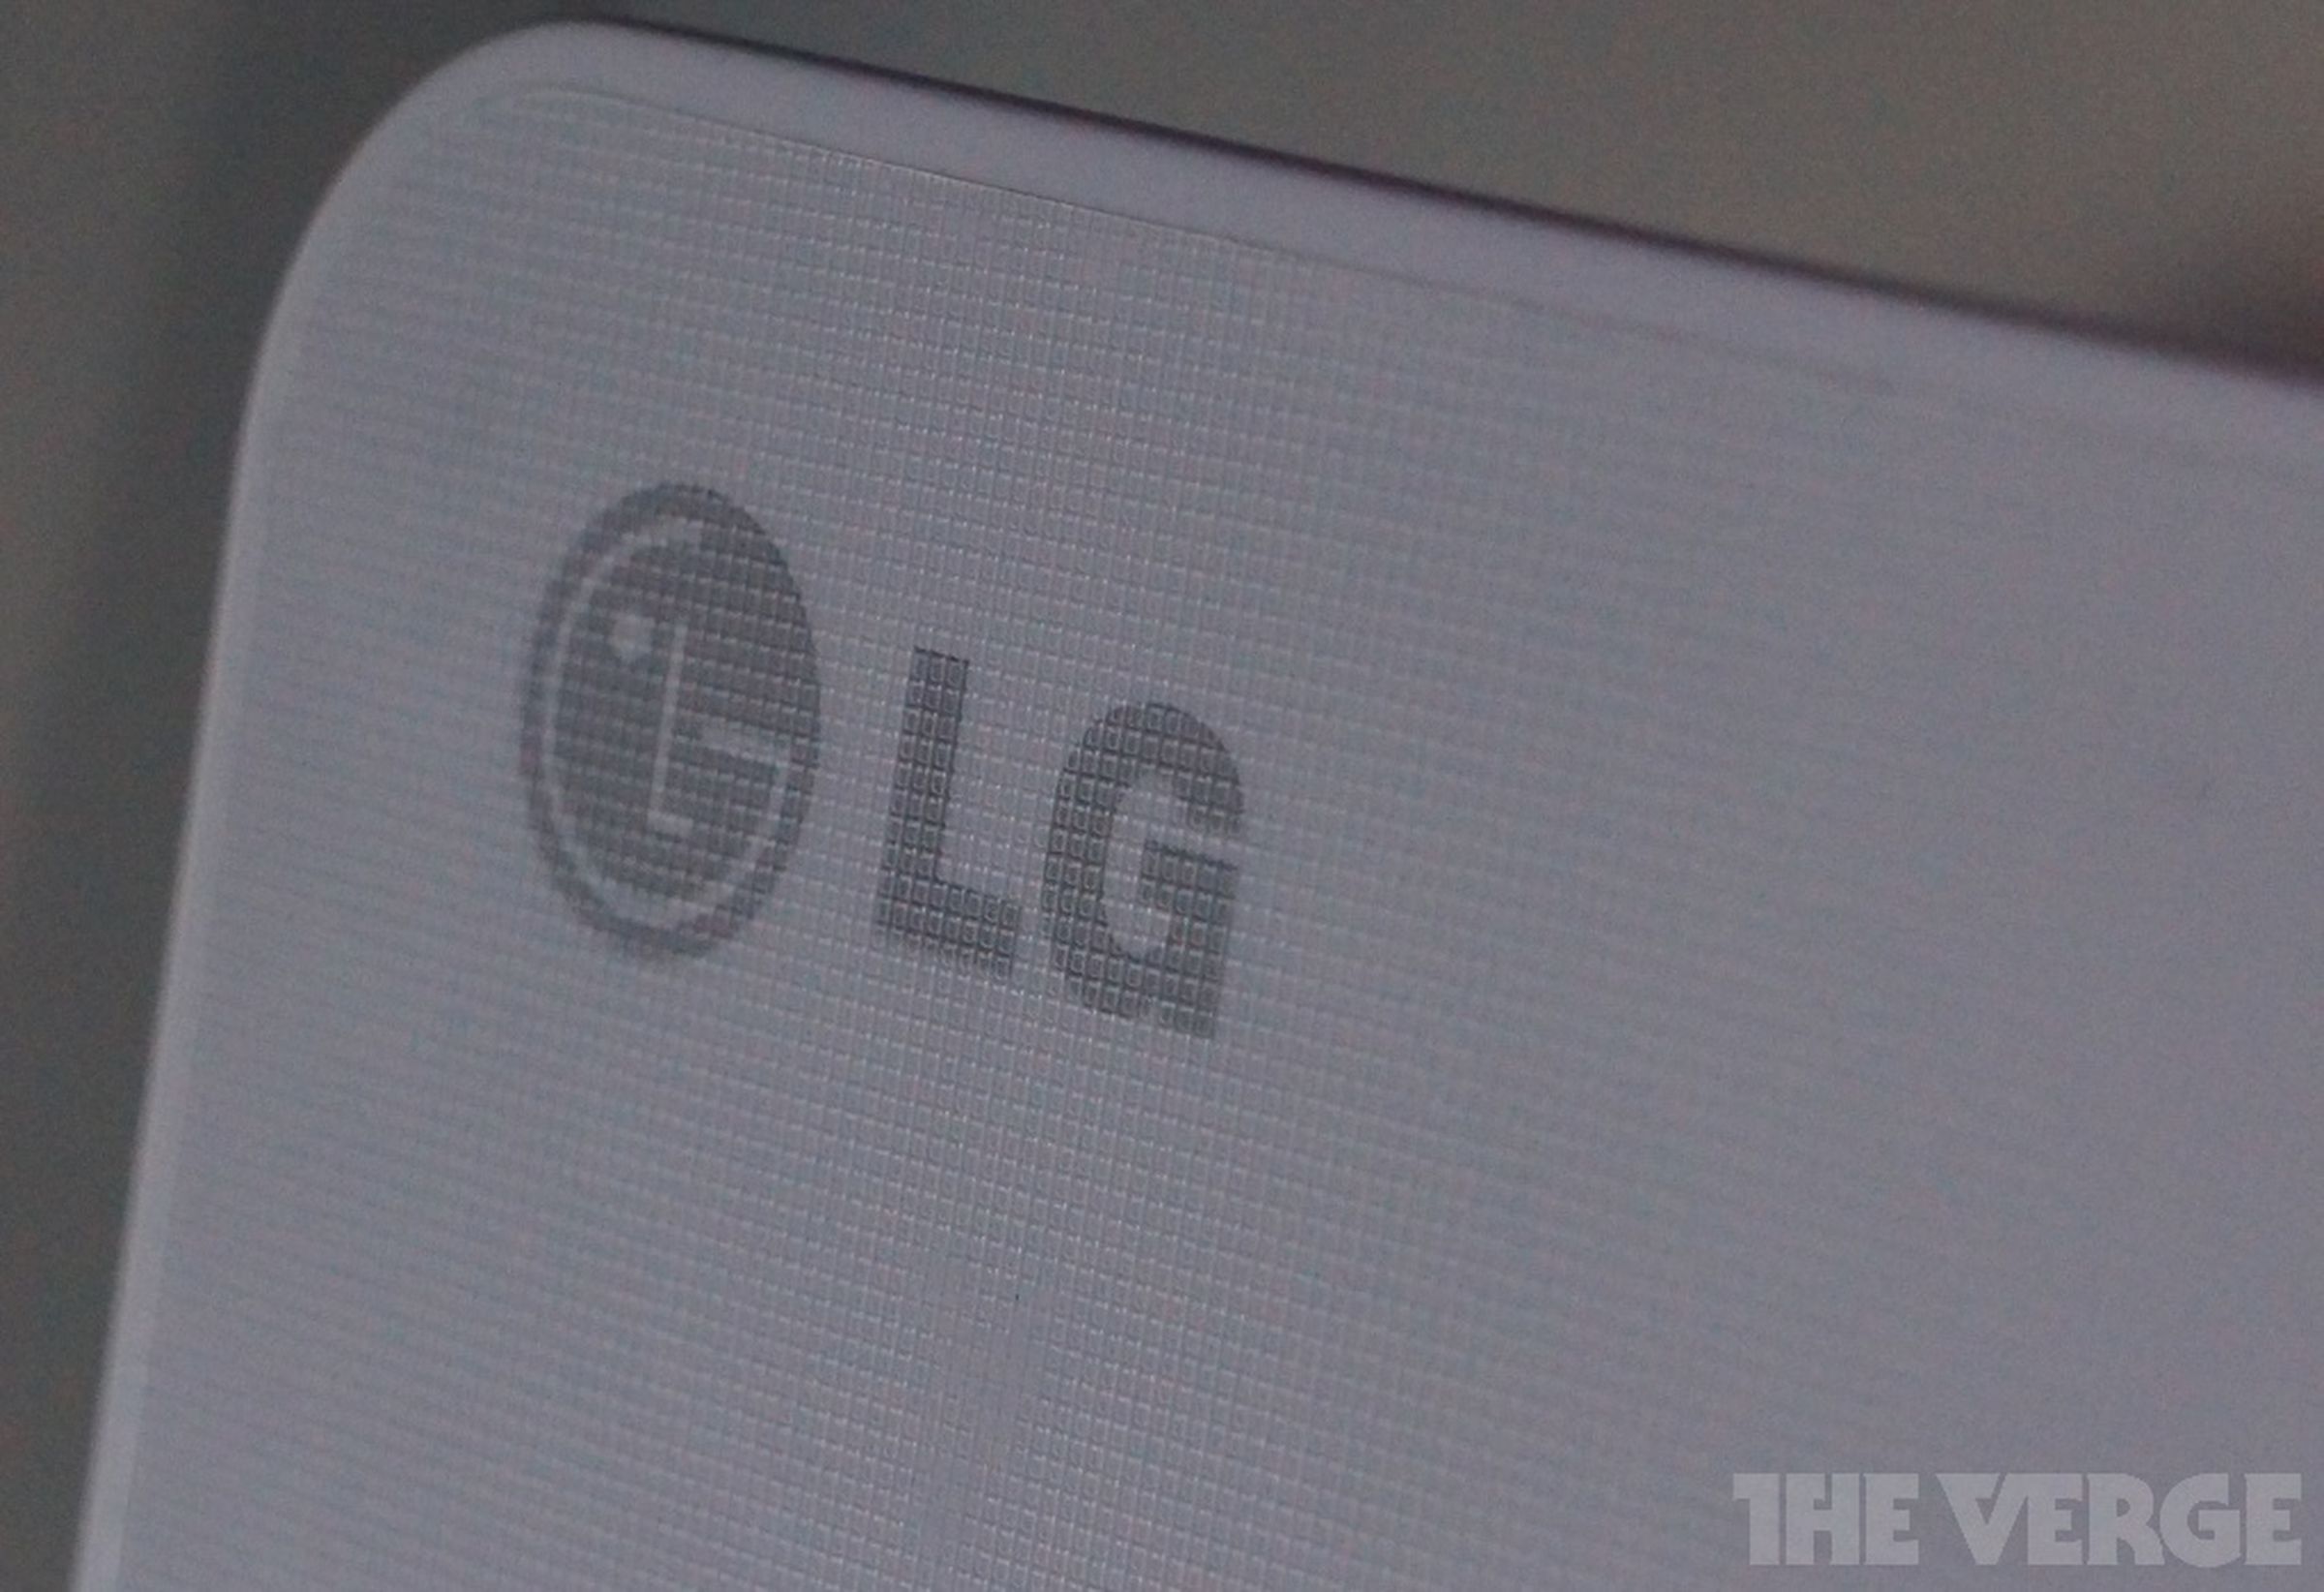 LG Z360 ultrabook hands-on photos